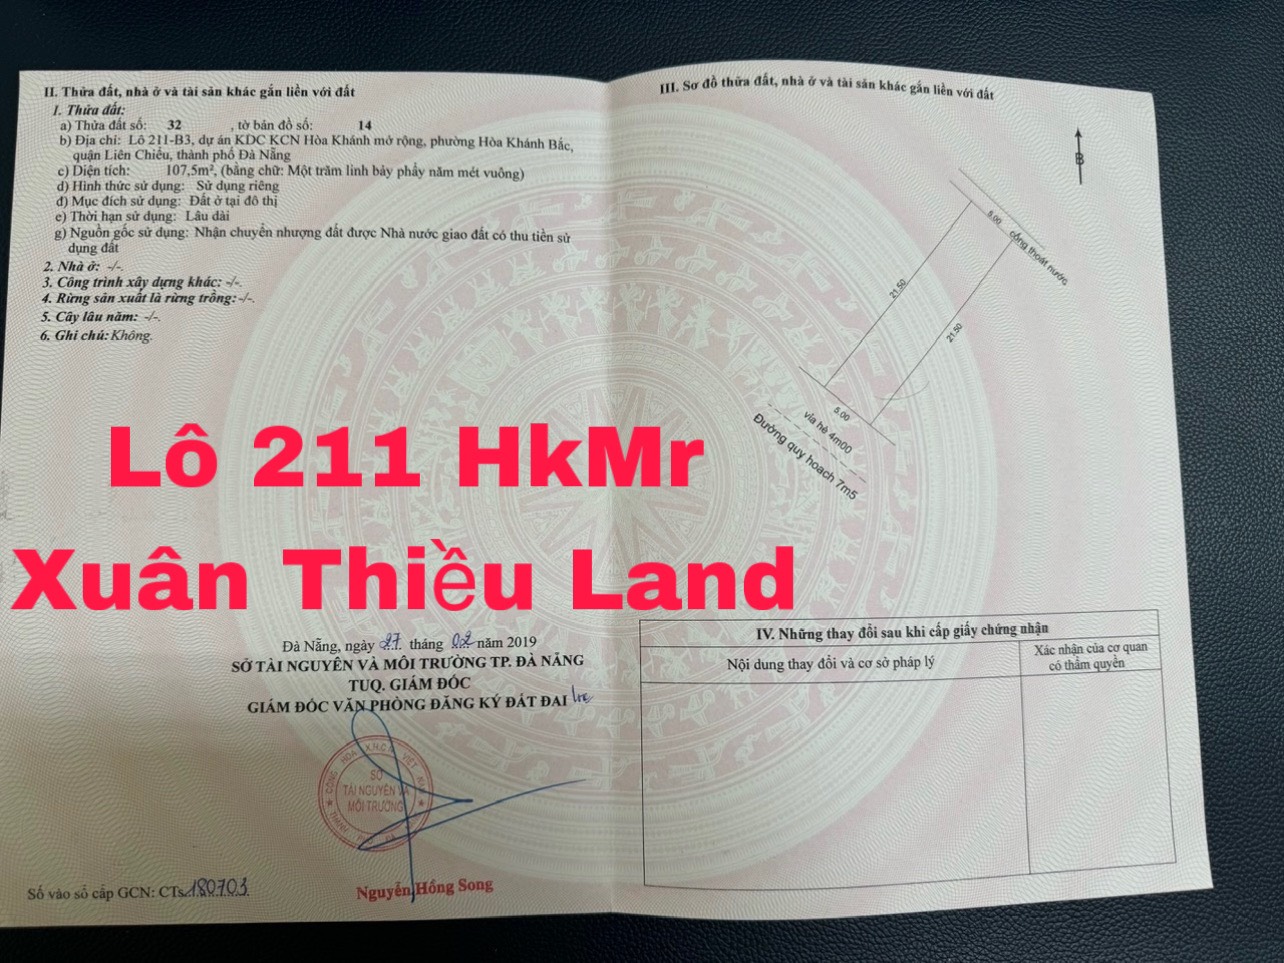 Bán 107,5m2 đất Đường Hồng Phước 2 (Đường 7m5) thuộc khu tái định cư HKMR. Lh:0905799991. - Ảnh 1